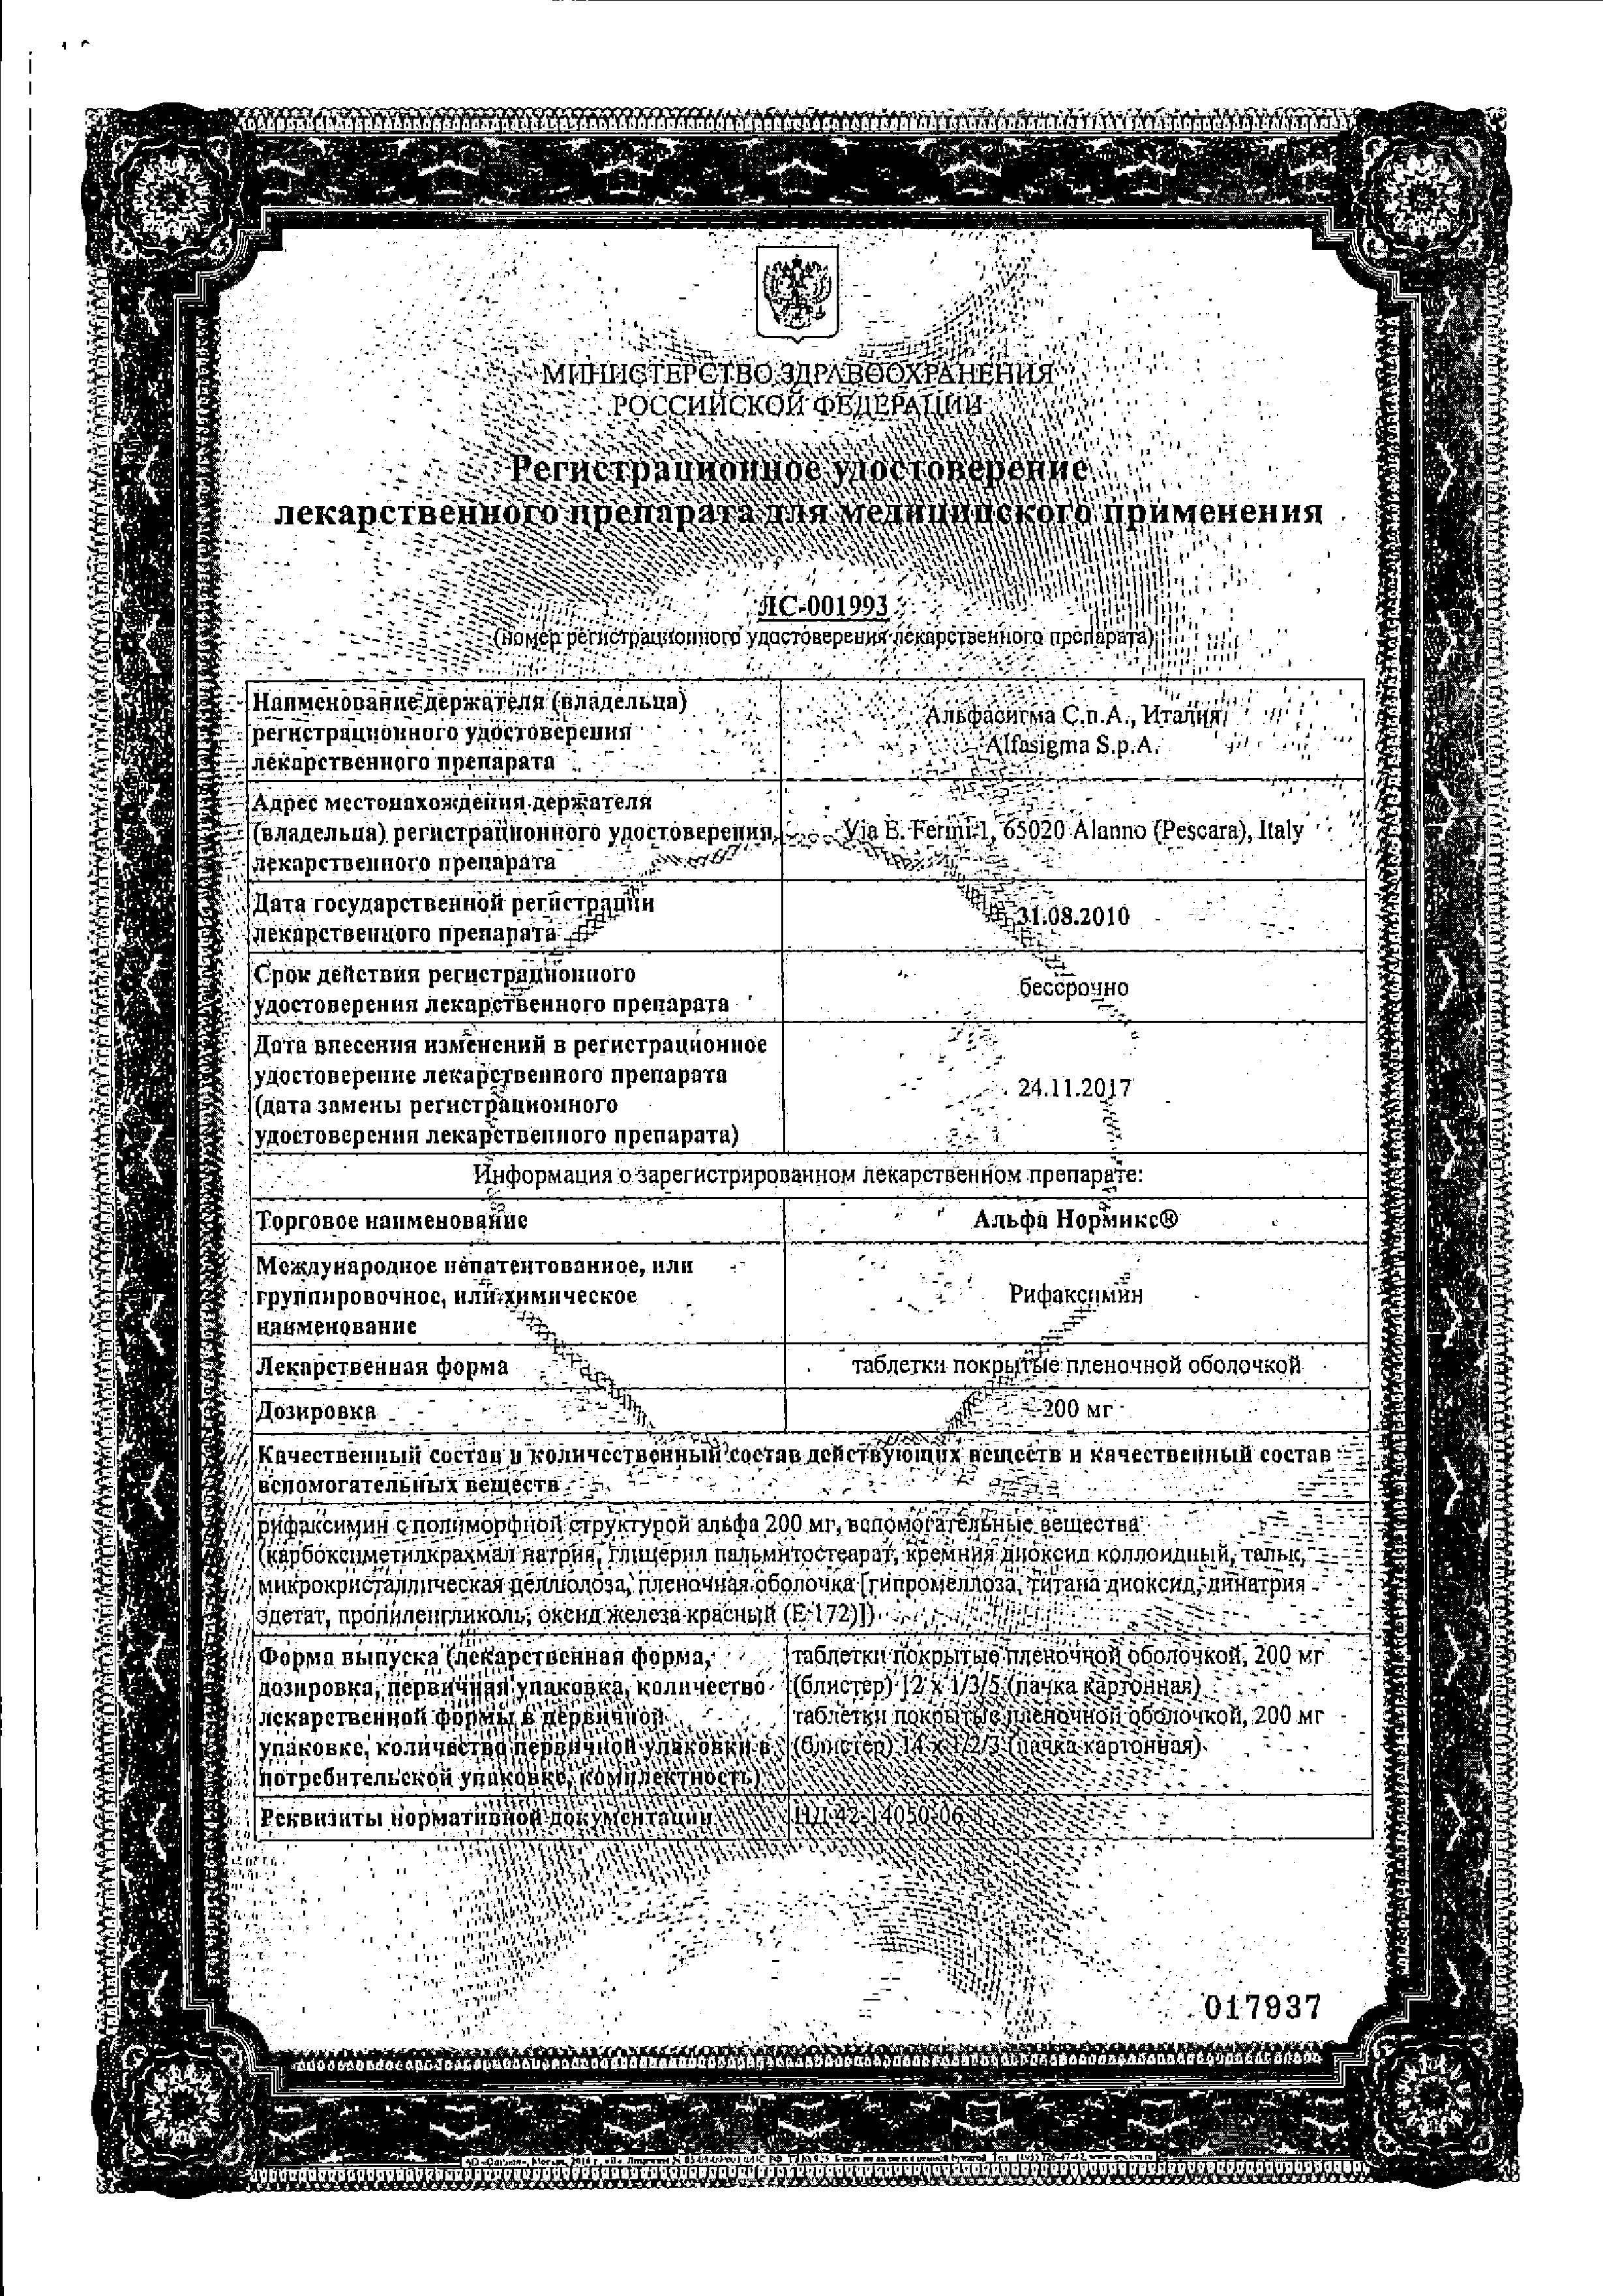 Альфа нормикс сертификат